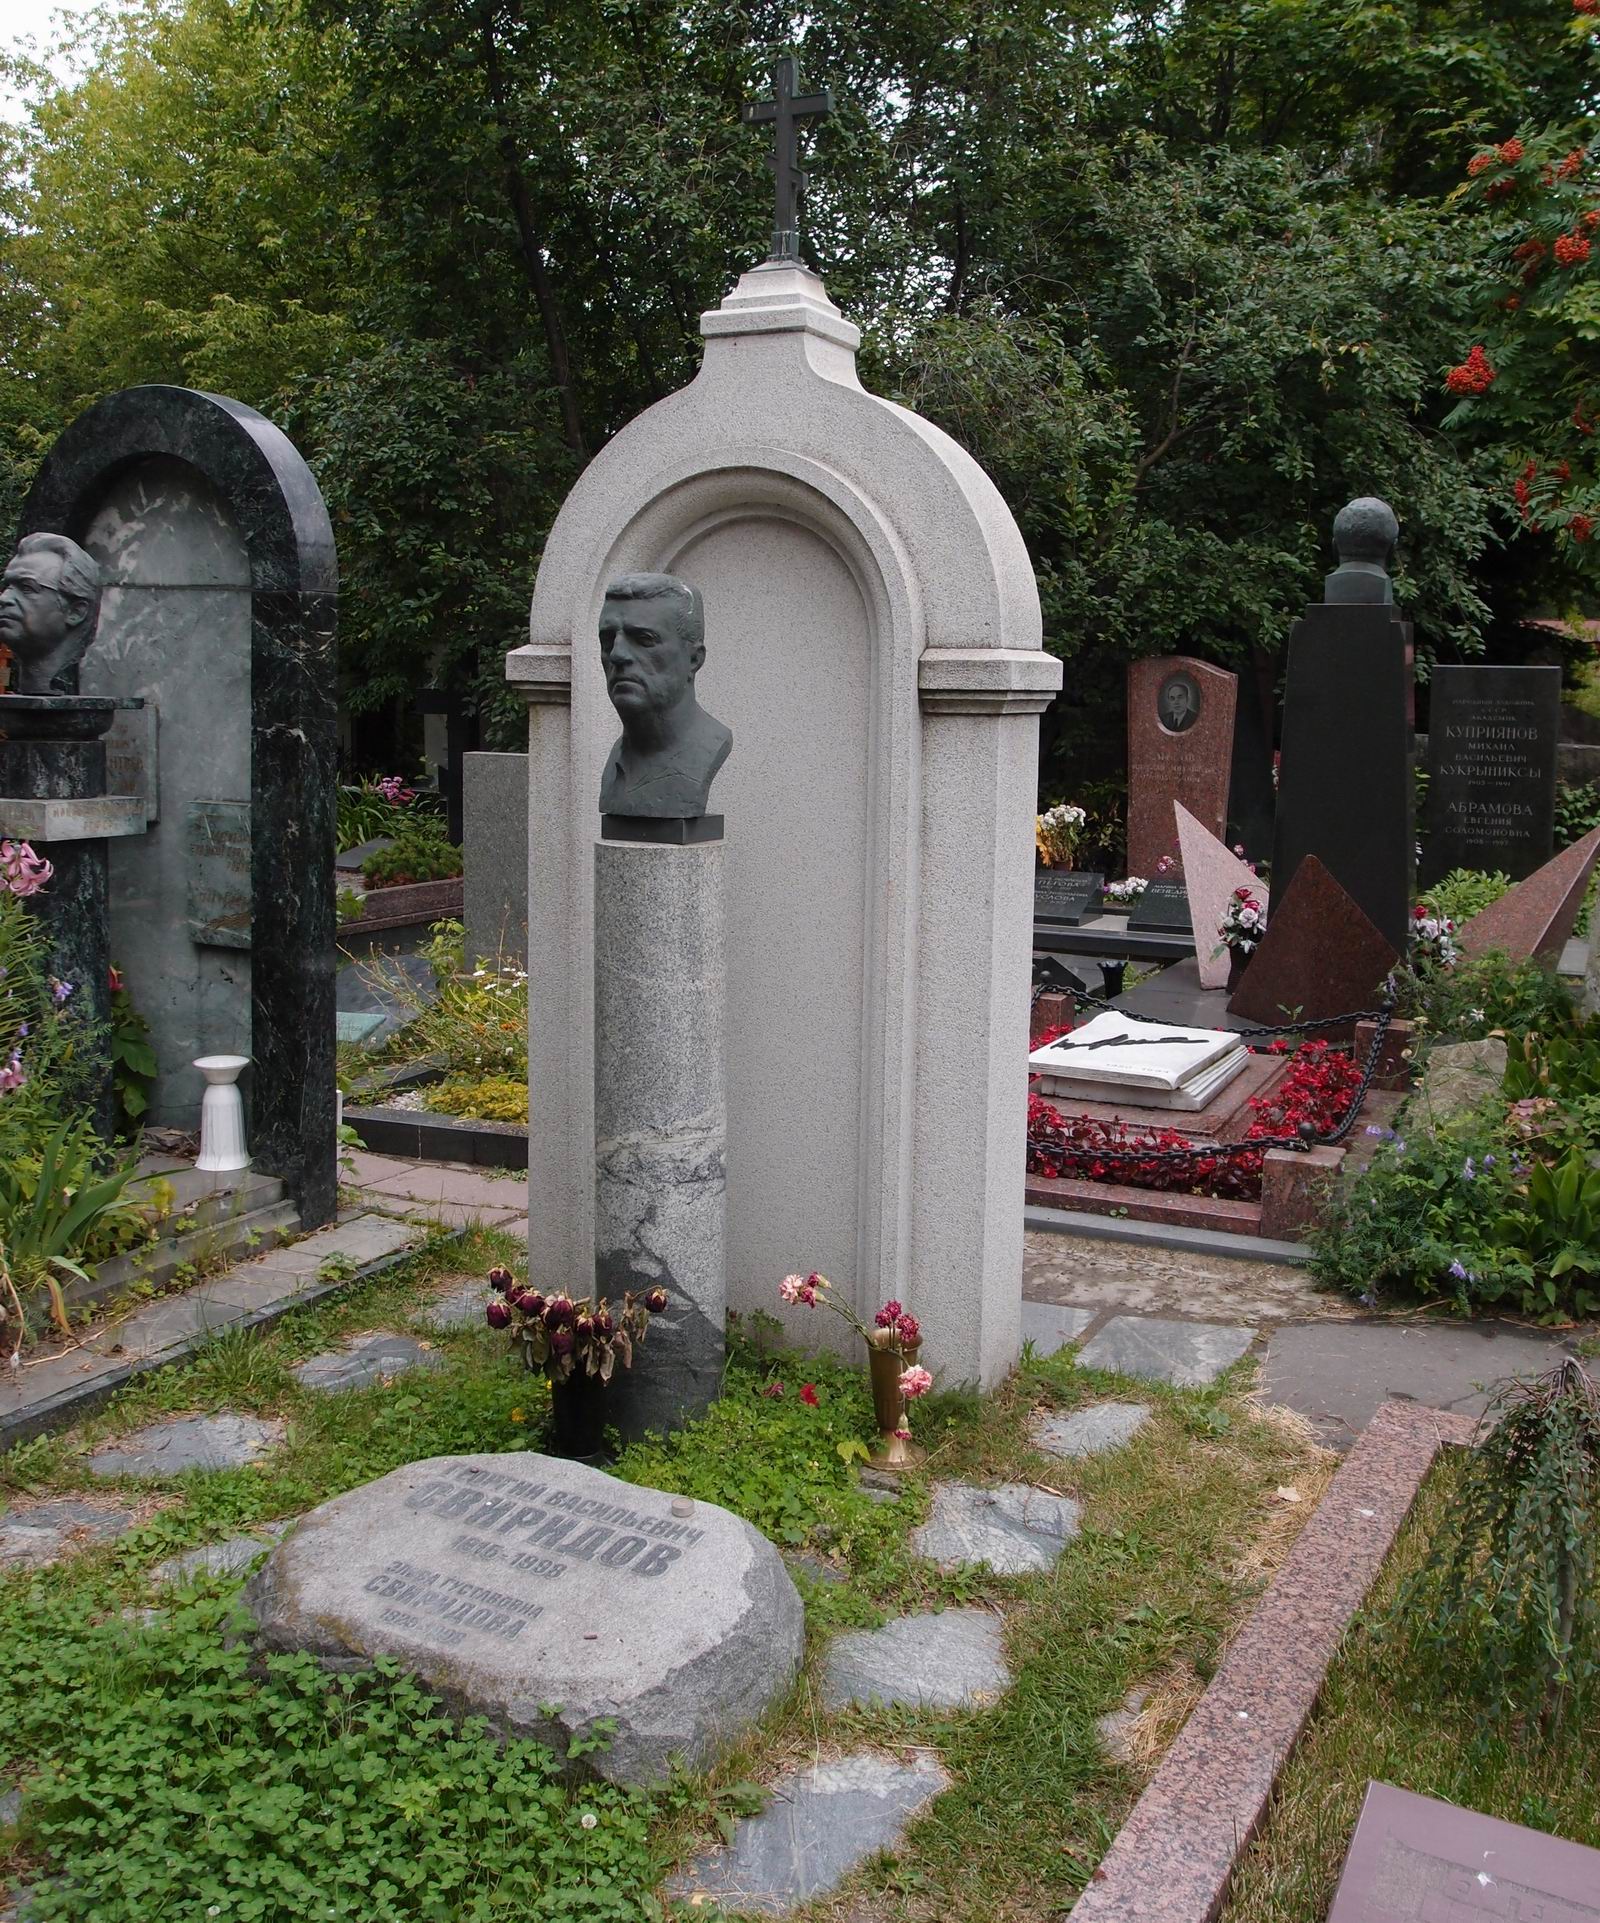 Памятник на могиле Свиридова Г.В. (1915-1998), ск. М.Аникушин, арх. Т.Садовский, на Новодевичьем кладбище (10-9-7). Нажмите левую кнопку мыши чтобы увидеть фрагмент памятника.